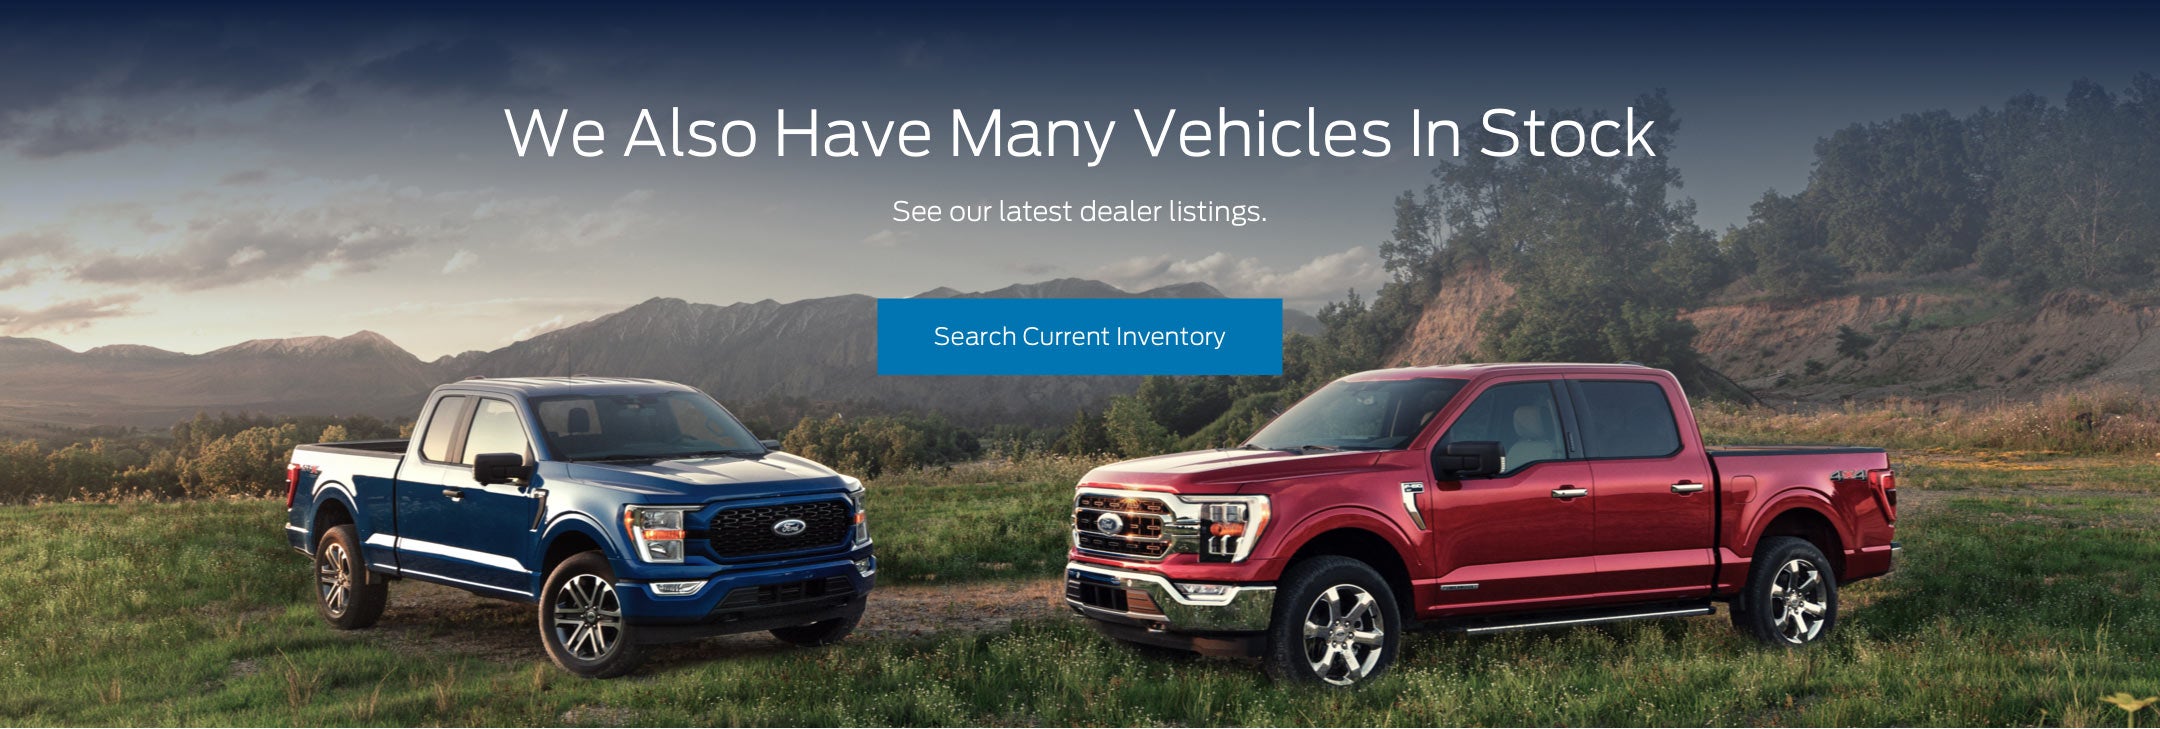 Ford vehicles in stock | Blake Ford in Franklin VA